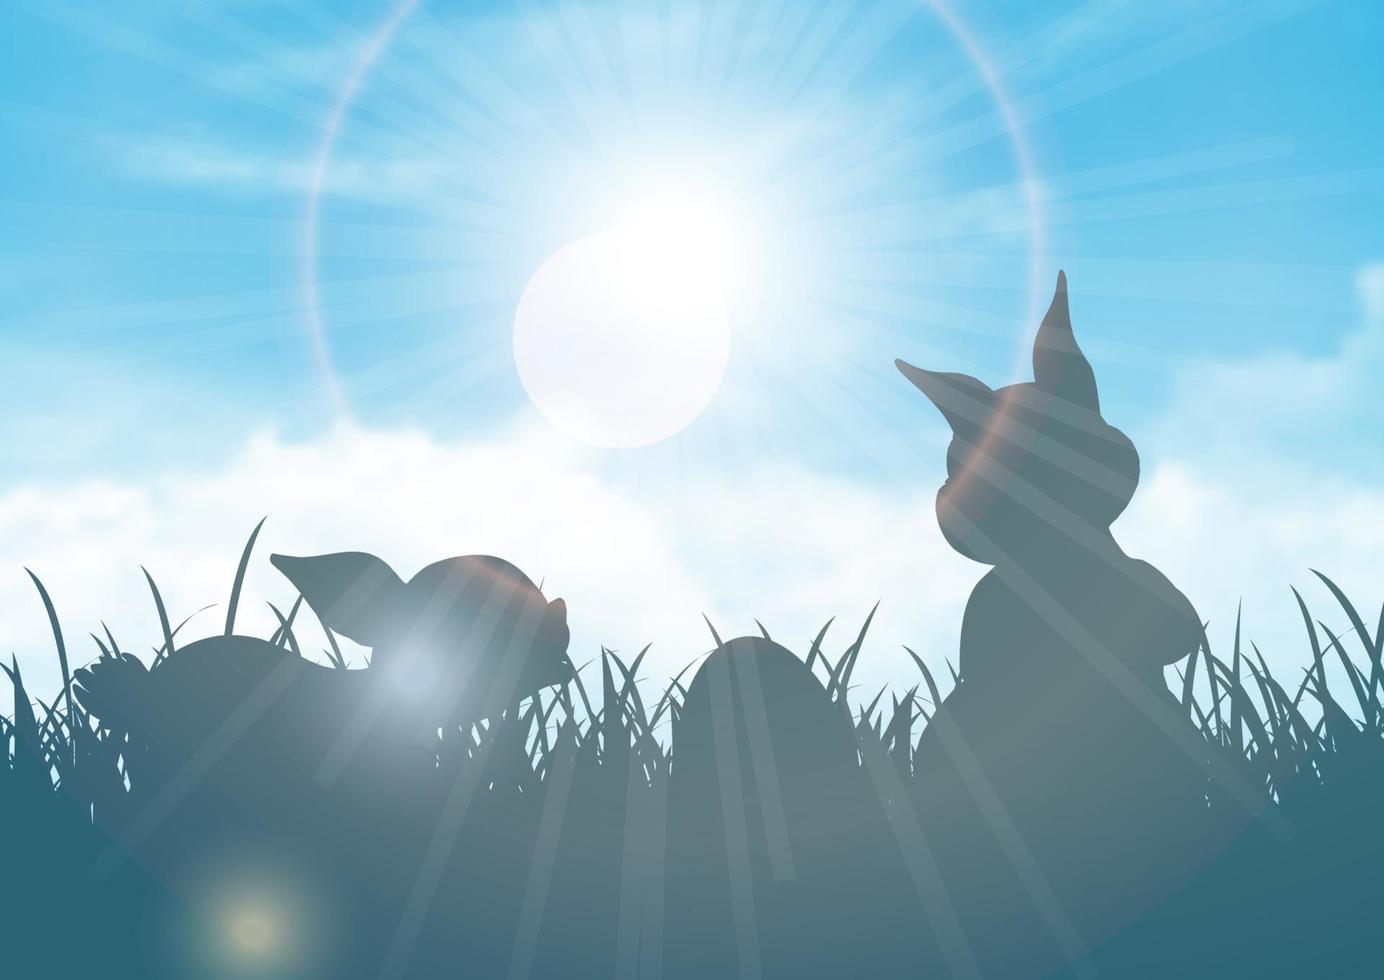 påsk bakgrund med silhuetter av kaniner mot en blå solig himmel vektor